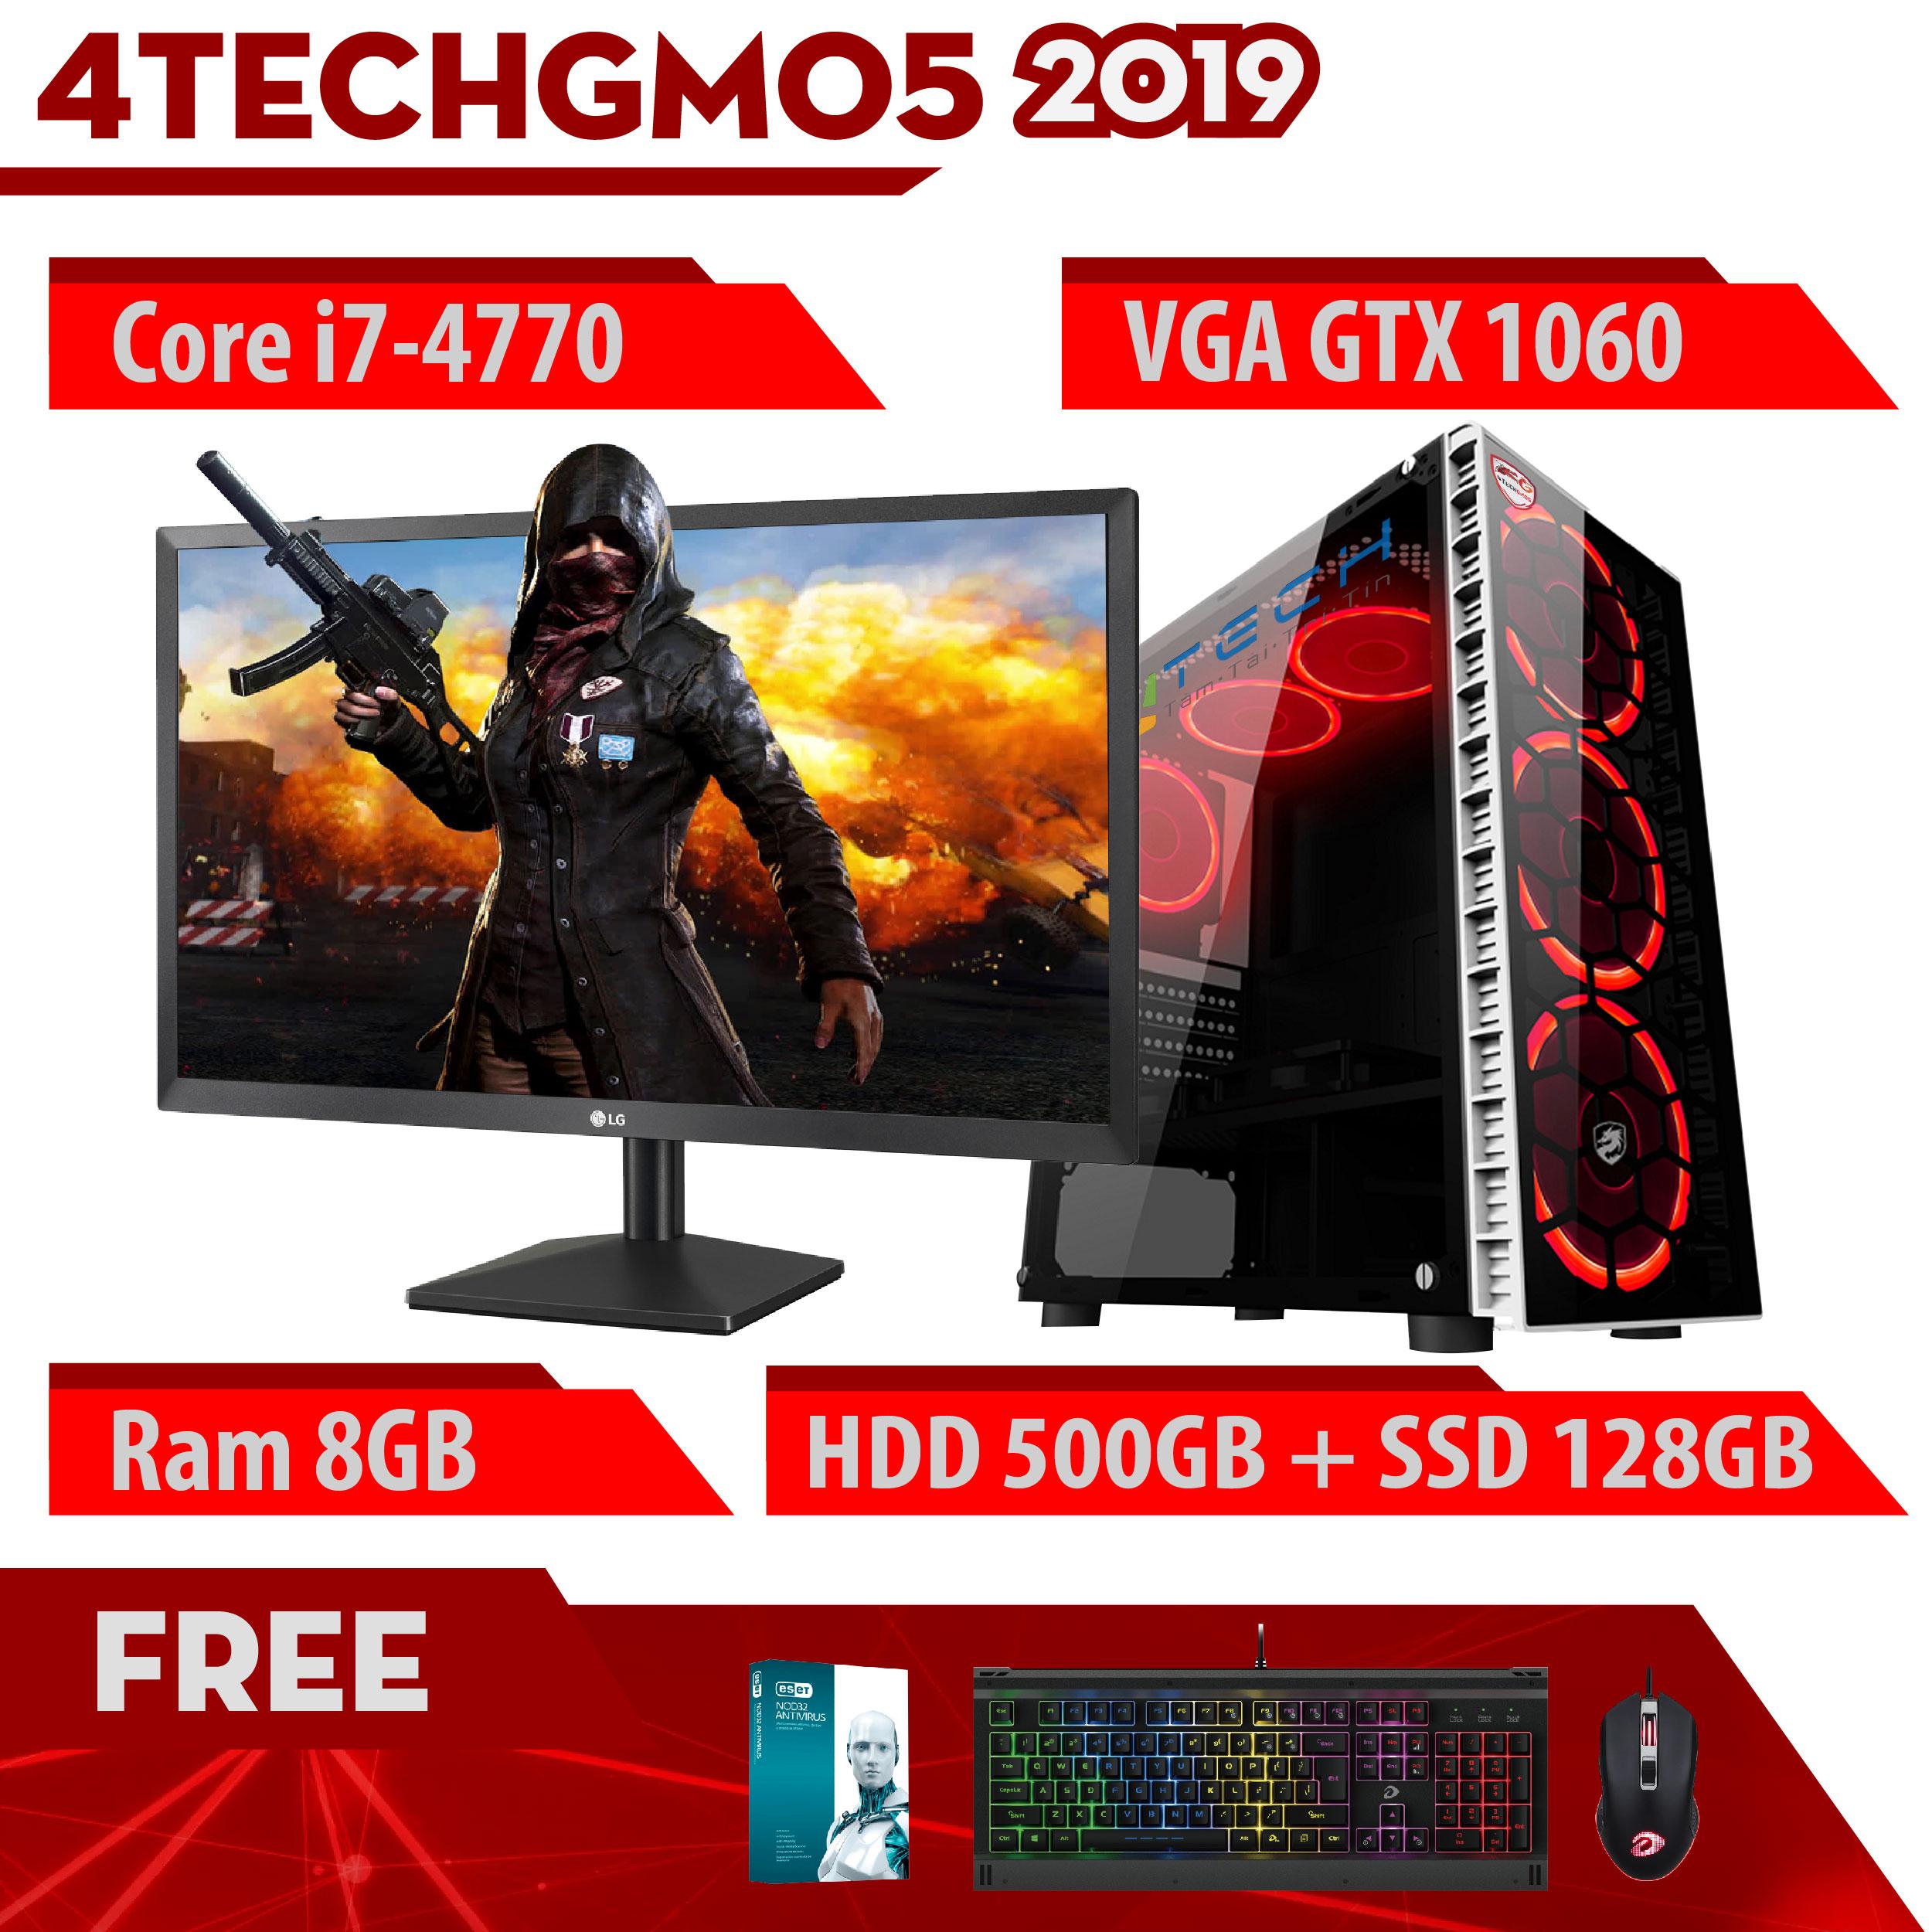 Máy Tính Chơi Game 4TechGM05 - 2019 Core i7-4770, Ram 8GB, HDD 500GB , SSD 120GB, VGA GTX 1060, Màn hình LG 24 inch - Tặng Bộ Phím Chuột Gaming DareU.